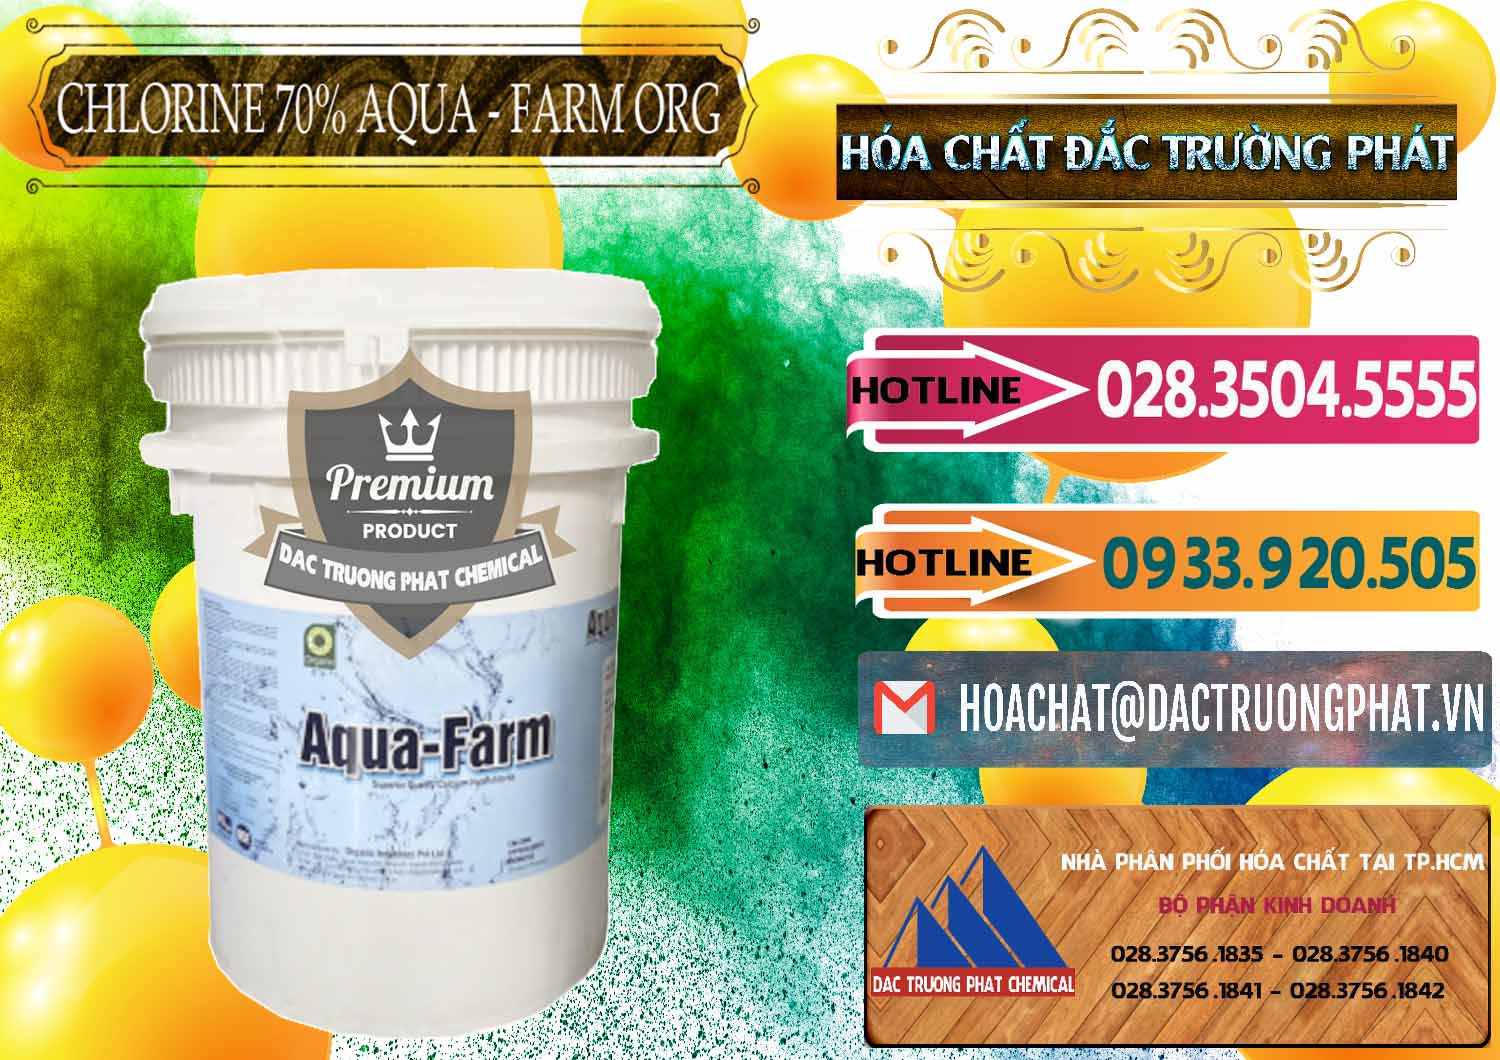 Công ty bán và cung cấp Chlorine – Clorin 70% Aqua - Farm ORG Organic Ấn Độ India - 0246 - Chuyên phân phối - bán hóa chất tại TP.HCM - dactruongphat.vn